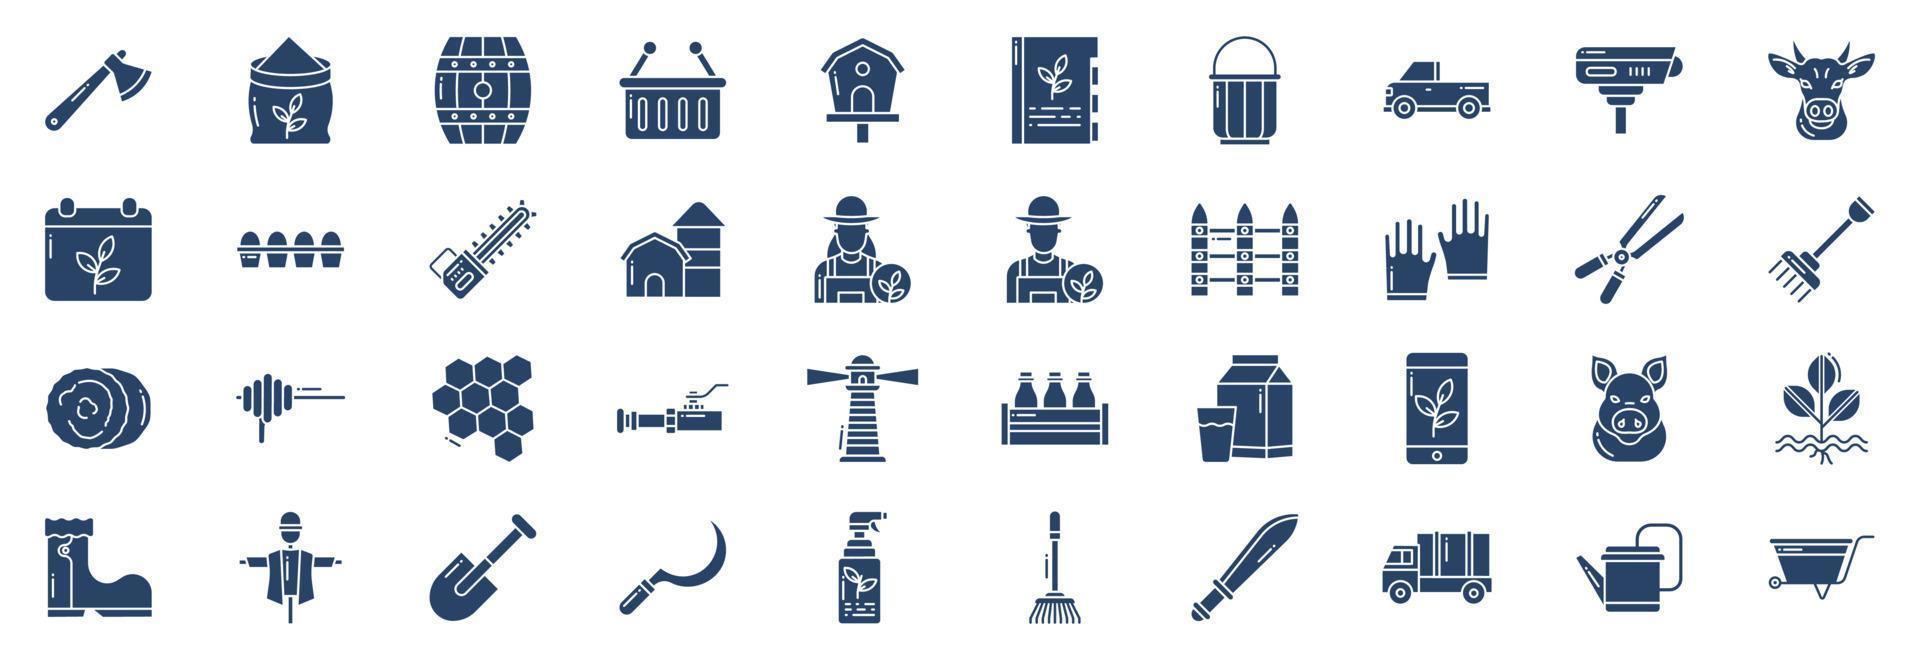 collection d'icônes liées à l'agriculture et à l'agriculture, y compris des icônes comme la hache, le baril, le panier, le livre et plus encore. illustrations vectorielles, ensemble parfait de pixels vecteur